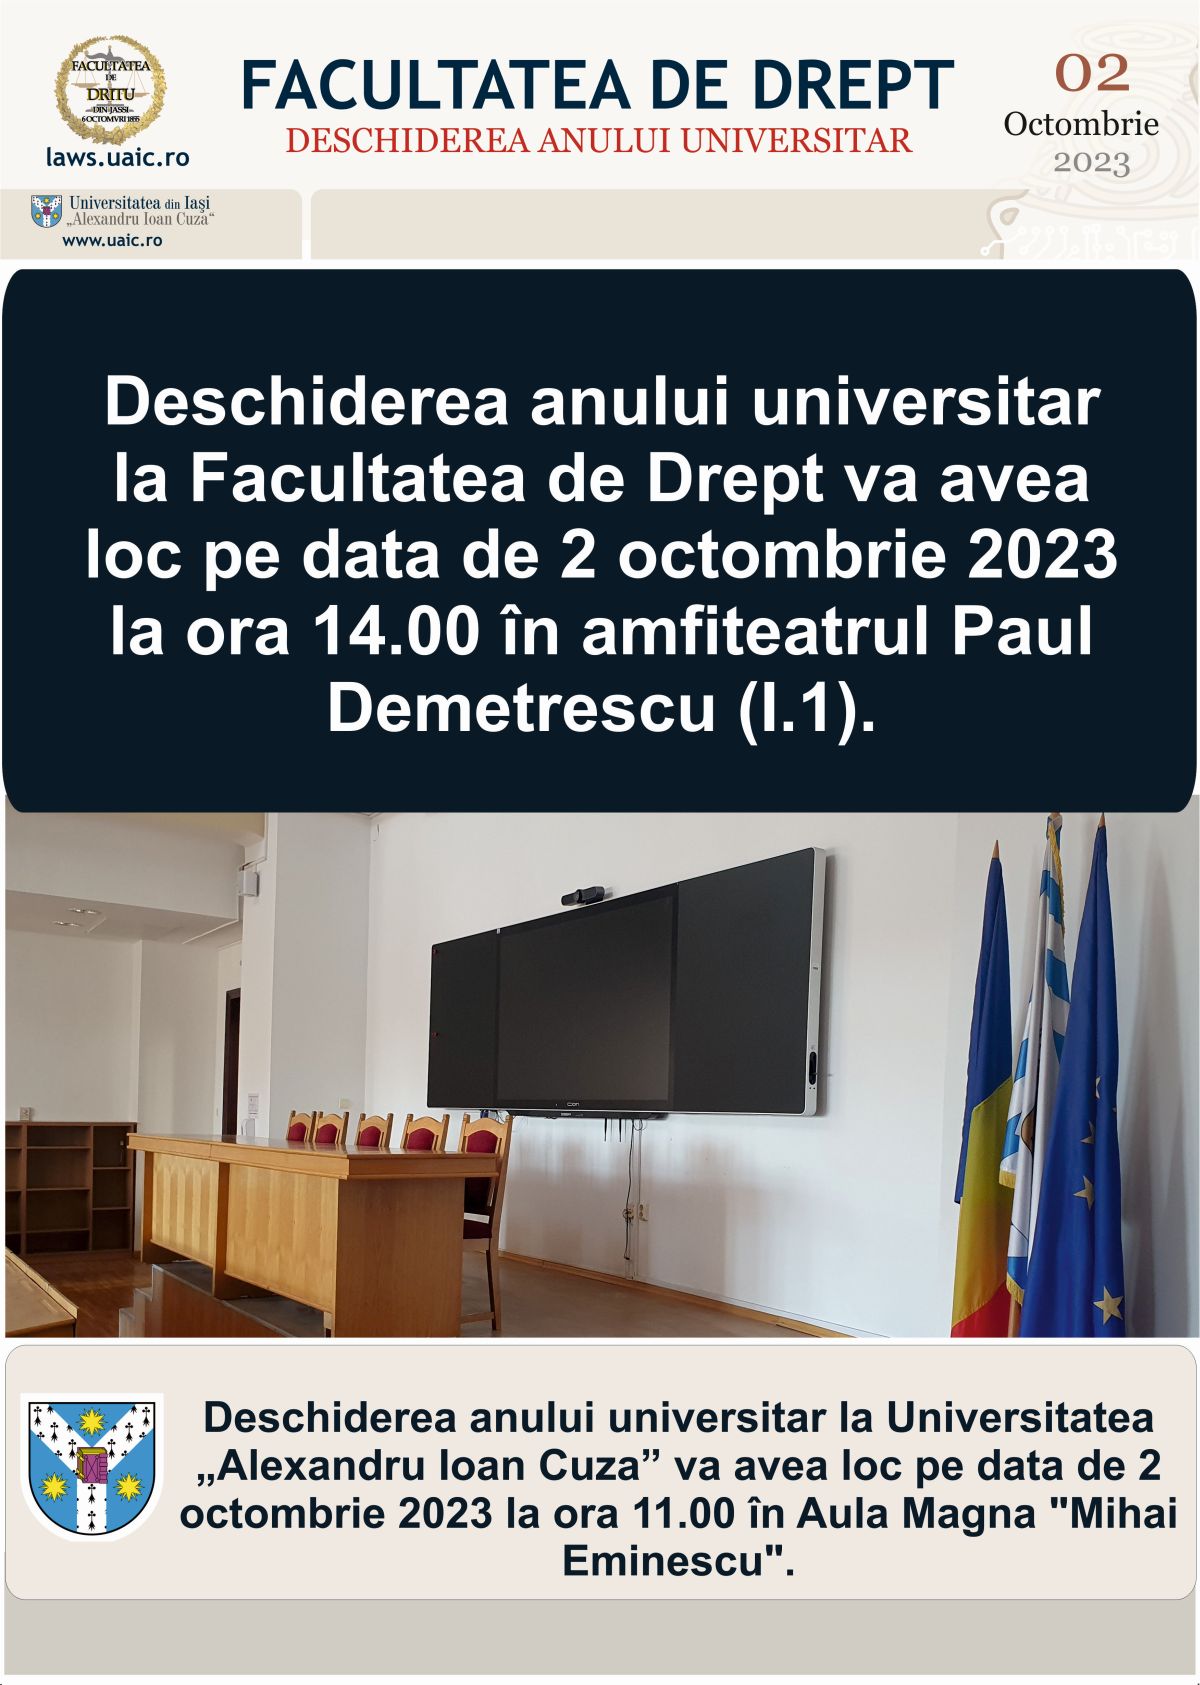 Deschiderea anului universitar la Facultatea de Drept va avea loc pe data de 2 octombrie 2023 la ora 14.00 în amfiteatrul Paul Demetrescu (I.1).